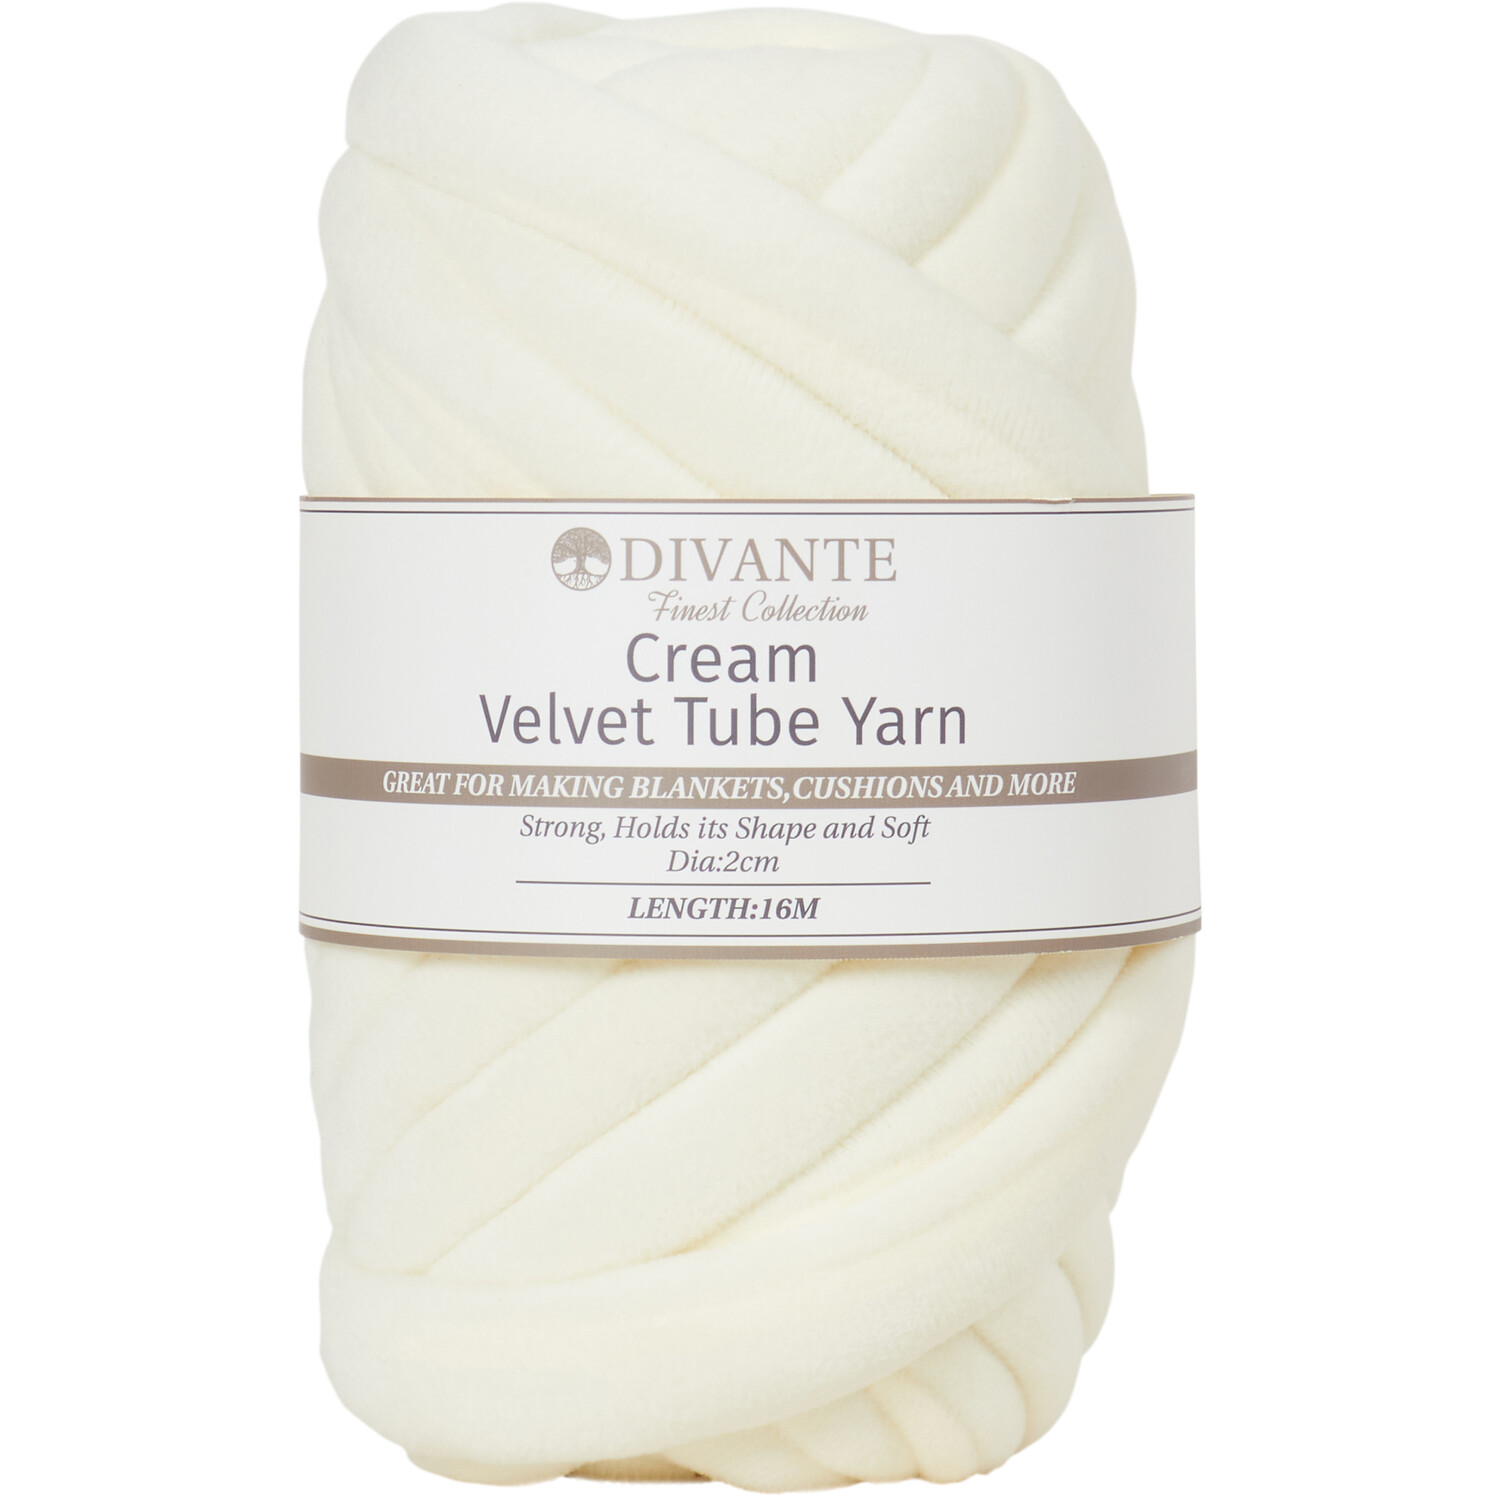 Divante Velvet Tube Yarn - Cream Image 1